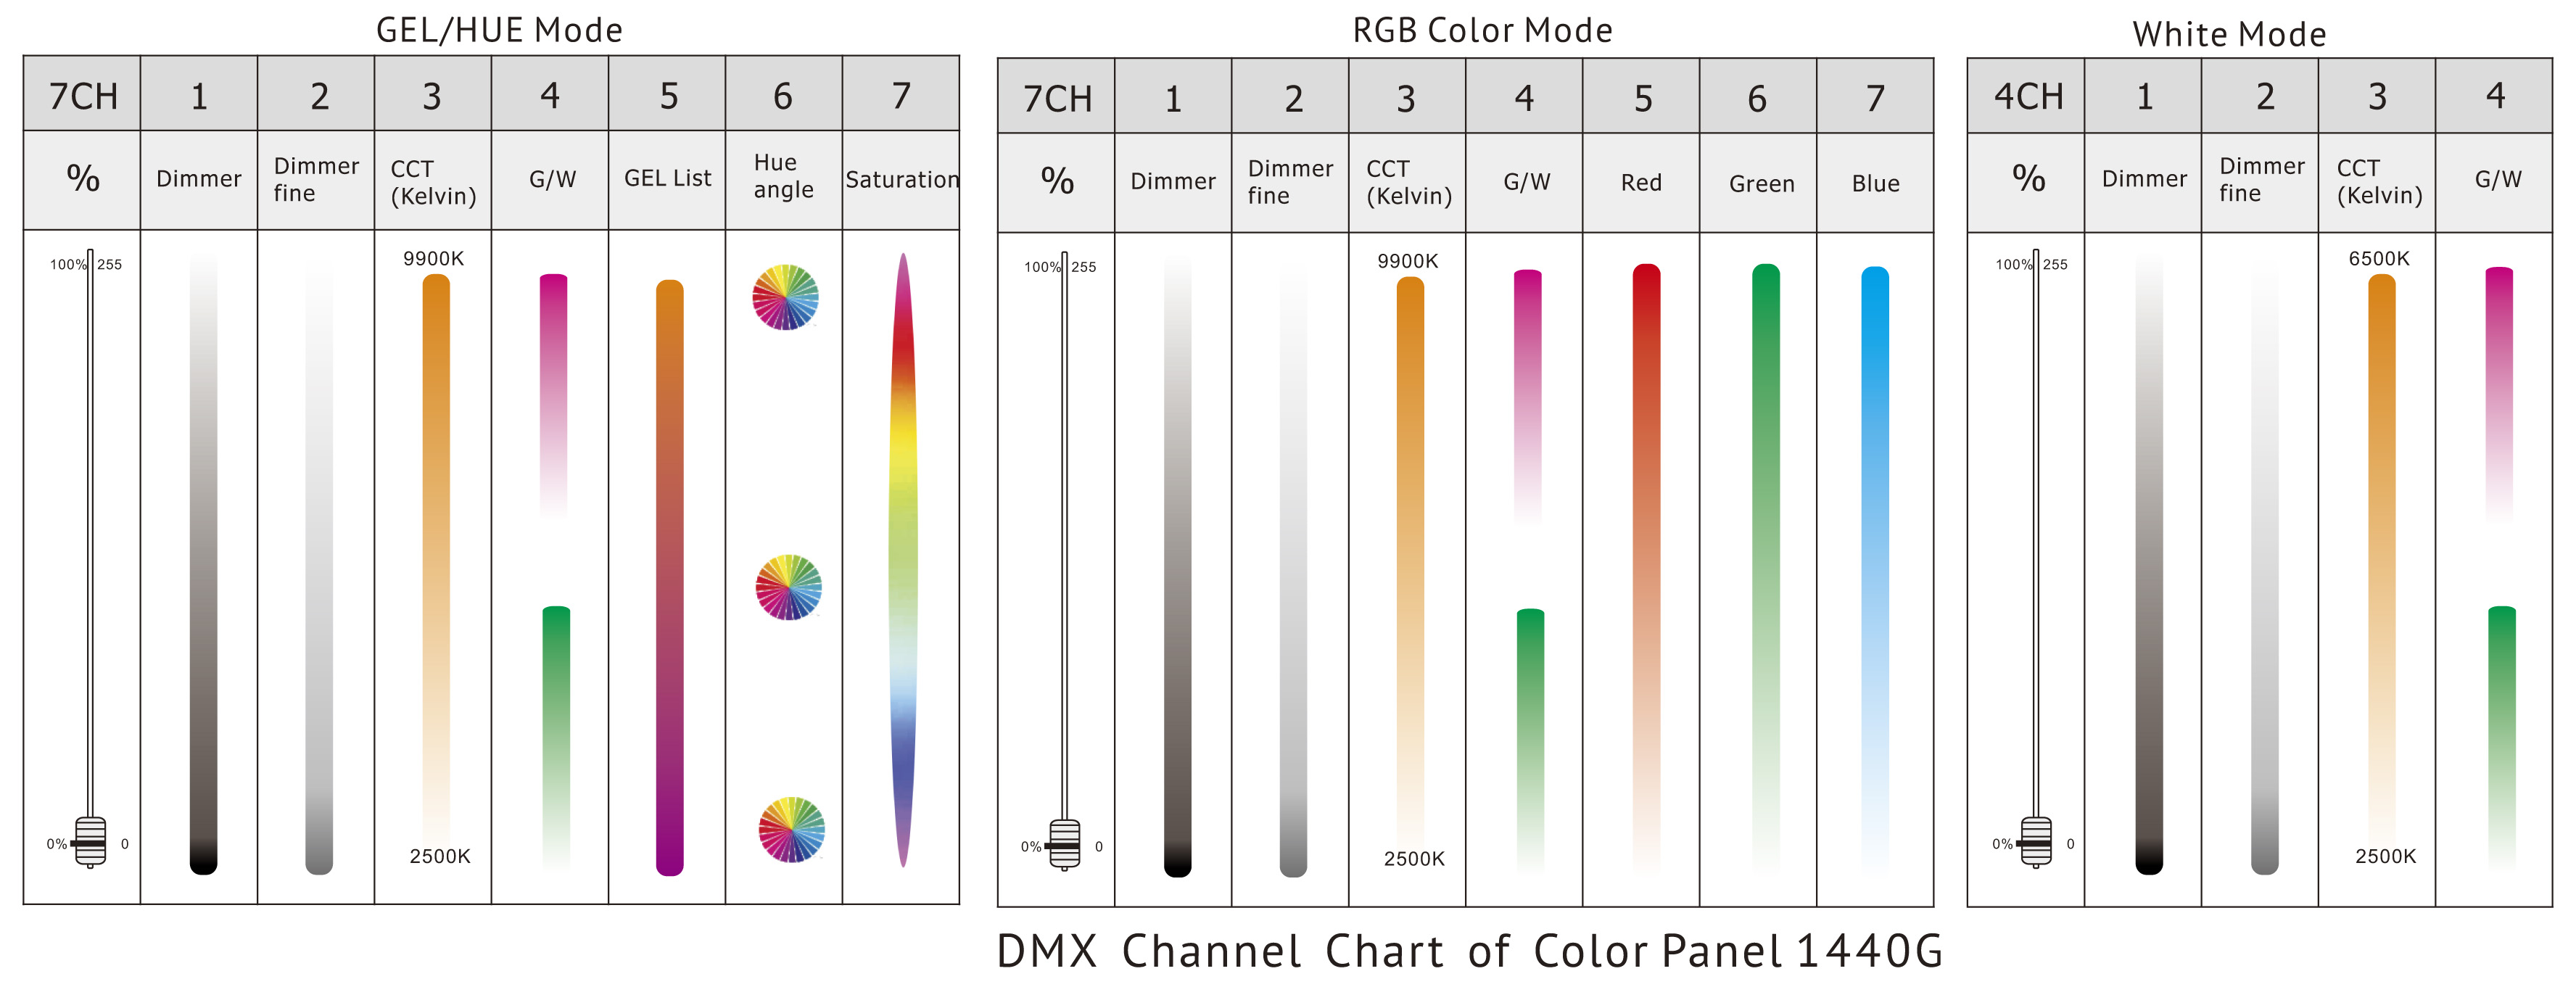 Diseño del panel de color 1440G DMX